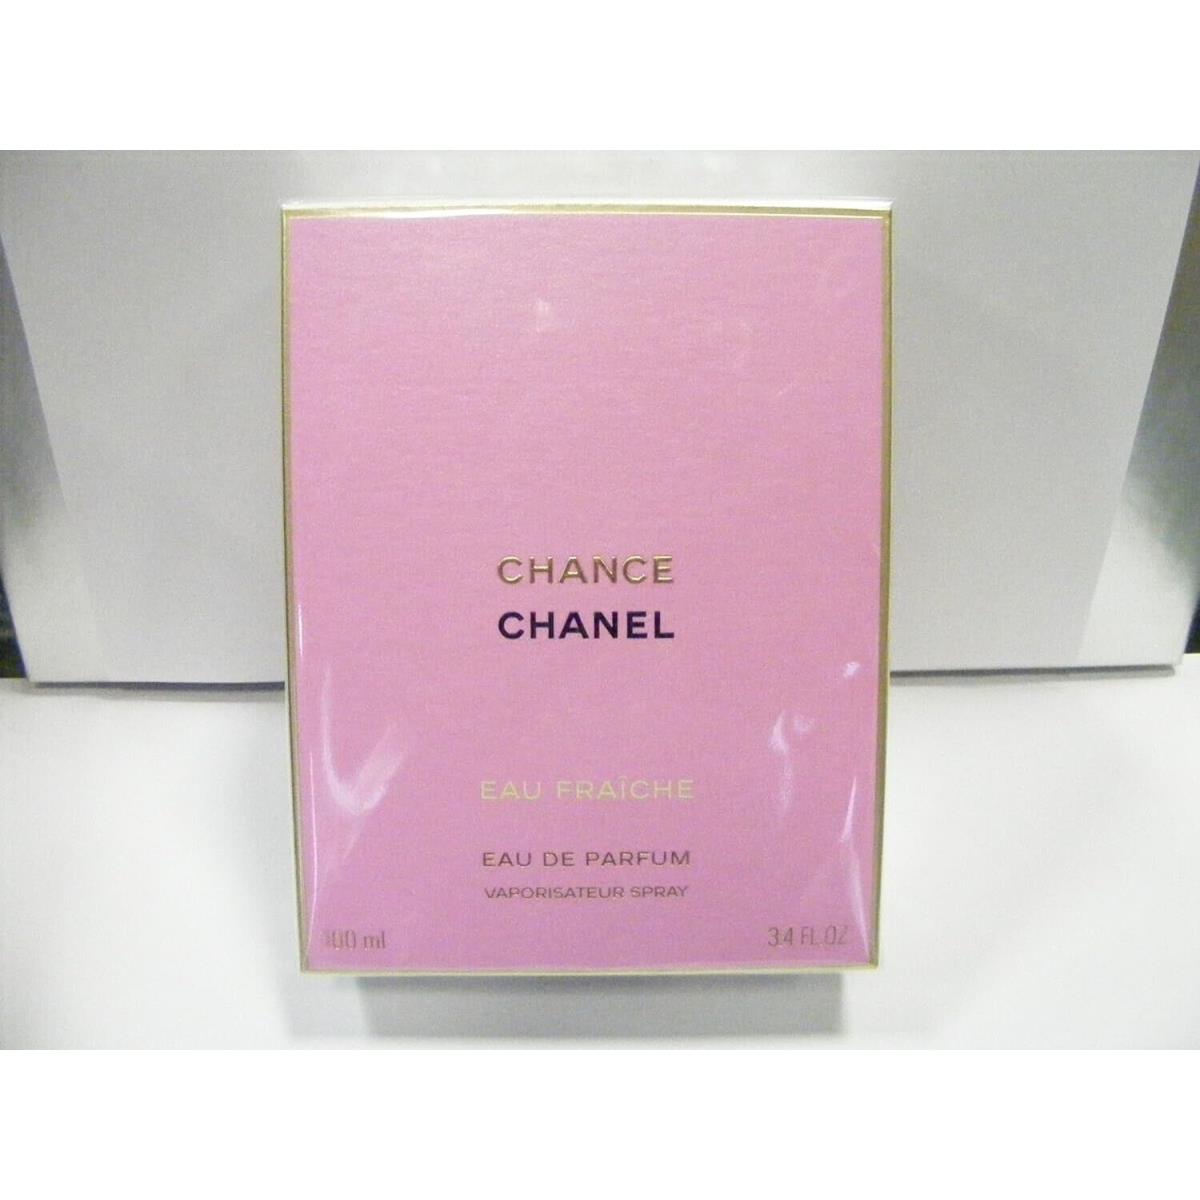 Chance Eau Fra Che Eau De Parfum Spray 3.4 Oz. By Chanel